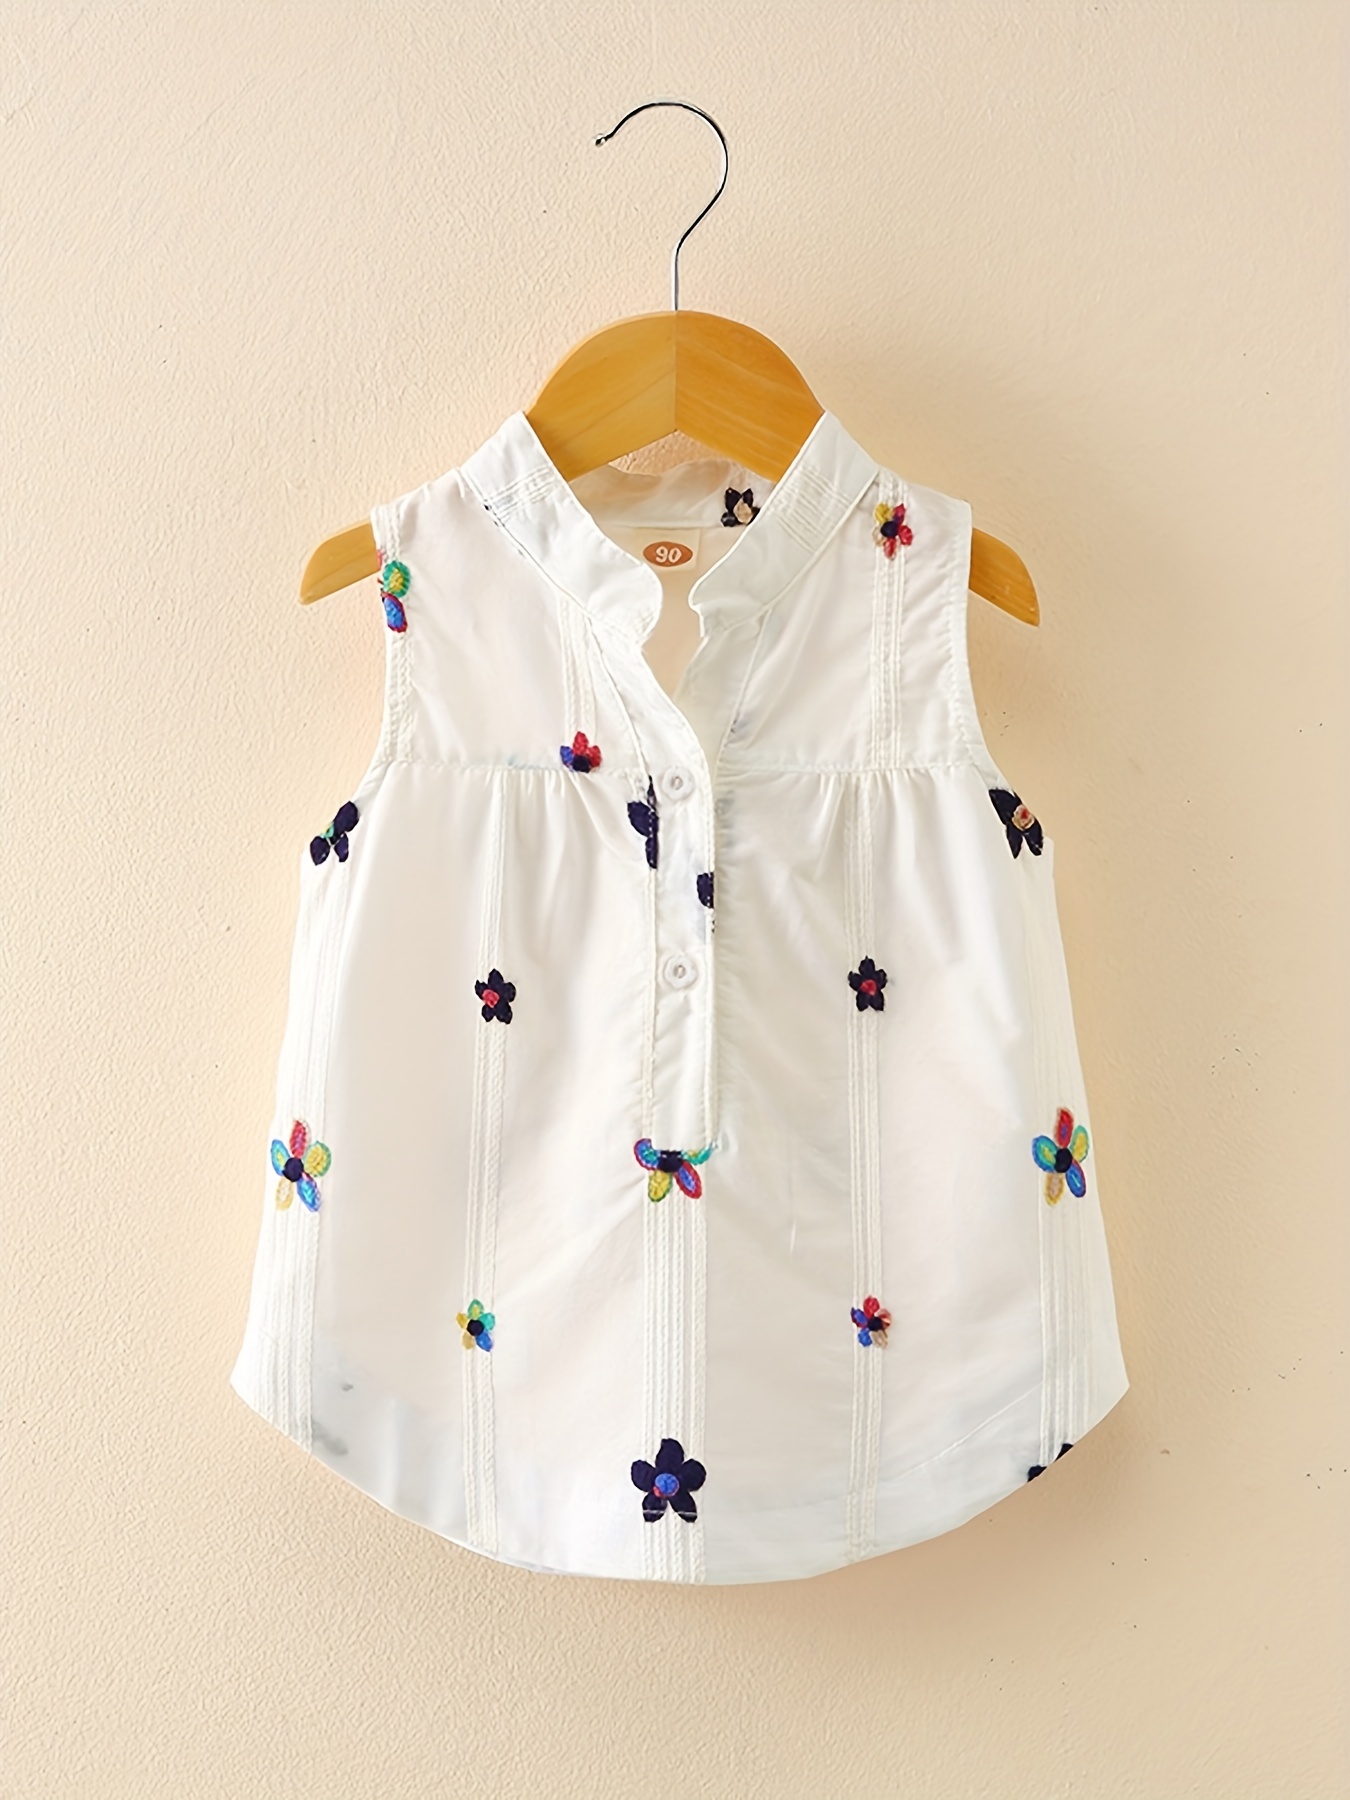 Baby Girls Summer Strapless Sleeveless T shirt New Fashion - Temu